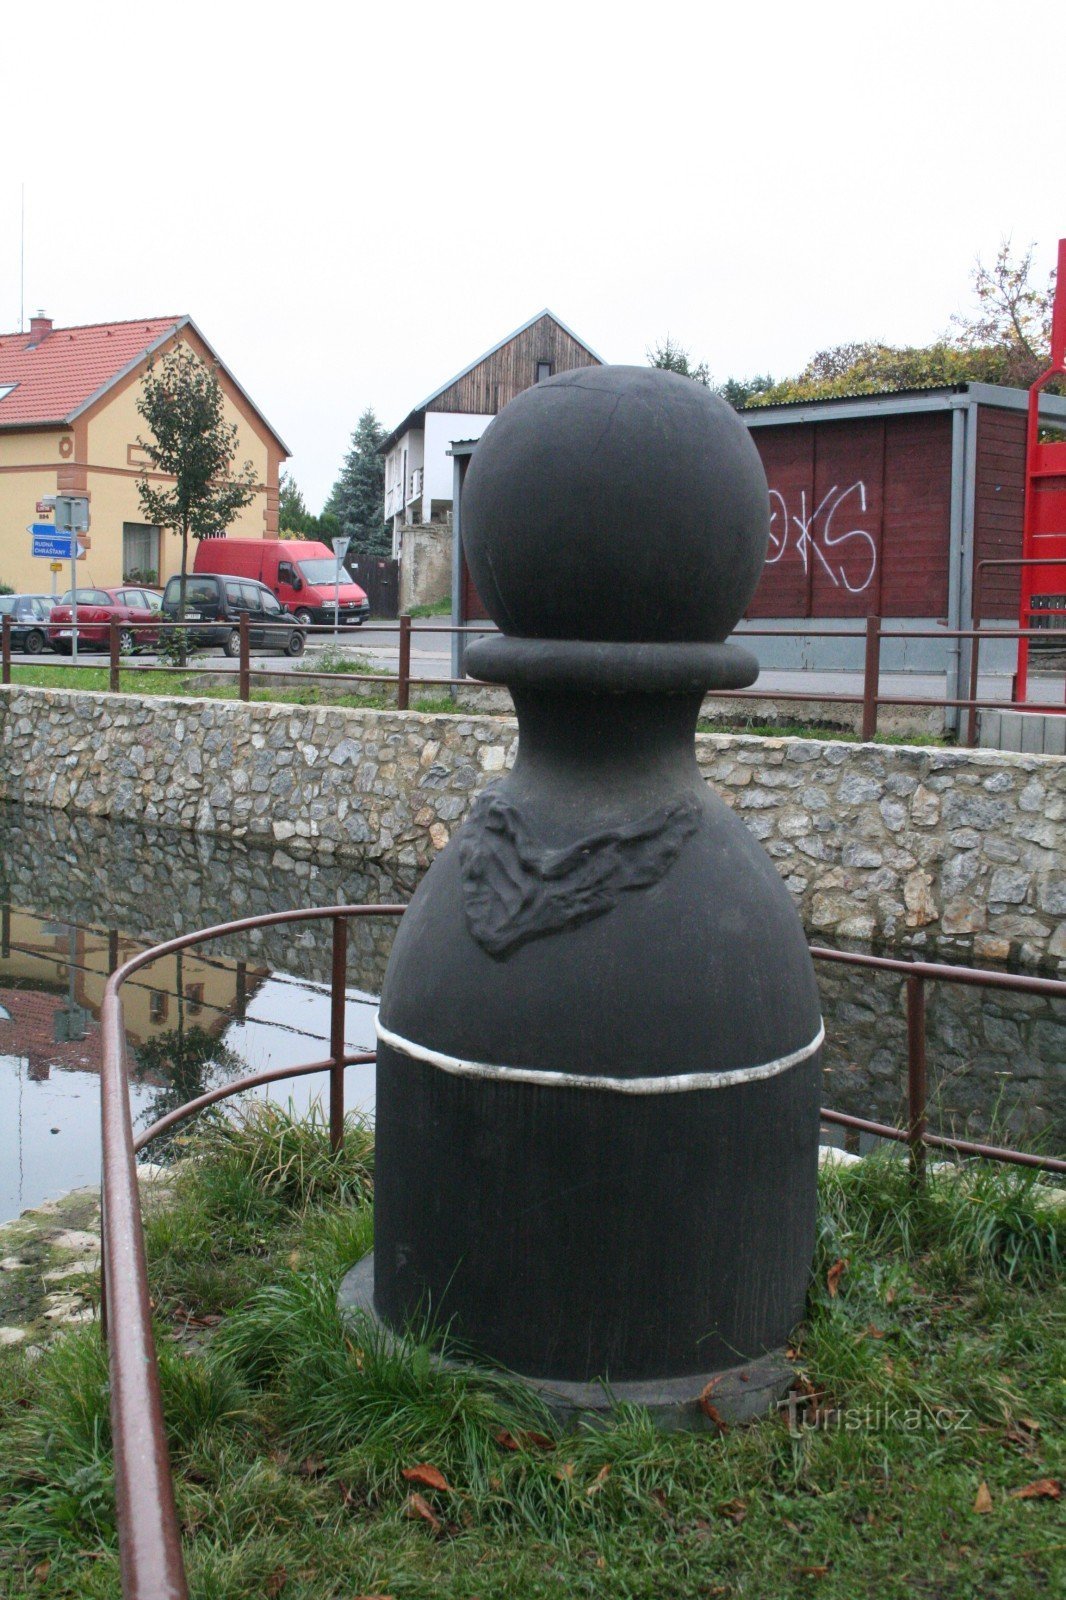 Karlštejnské skak - Black Pawn of Jinočany